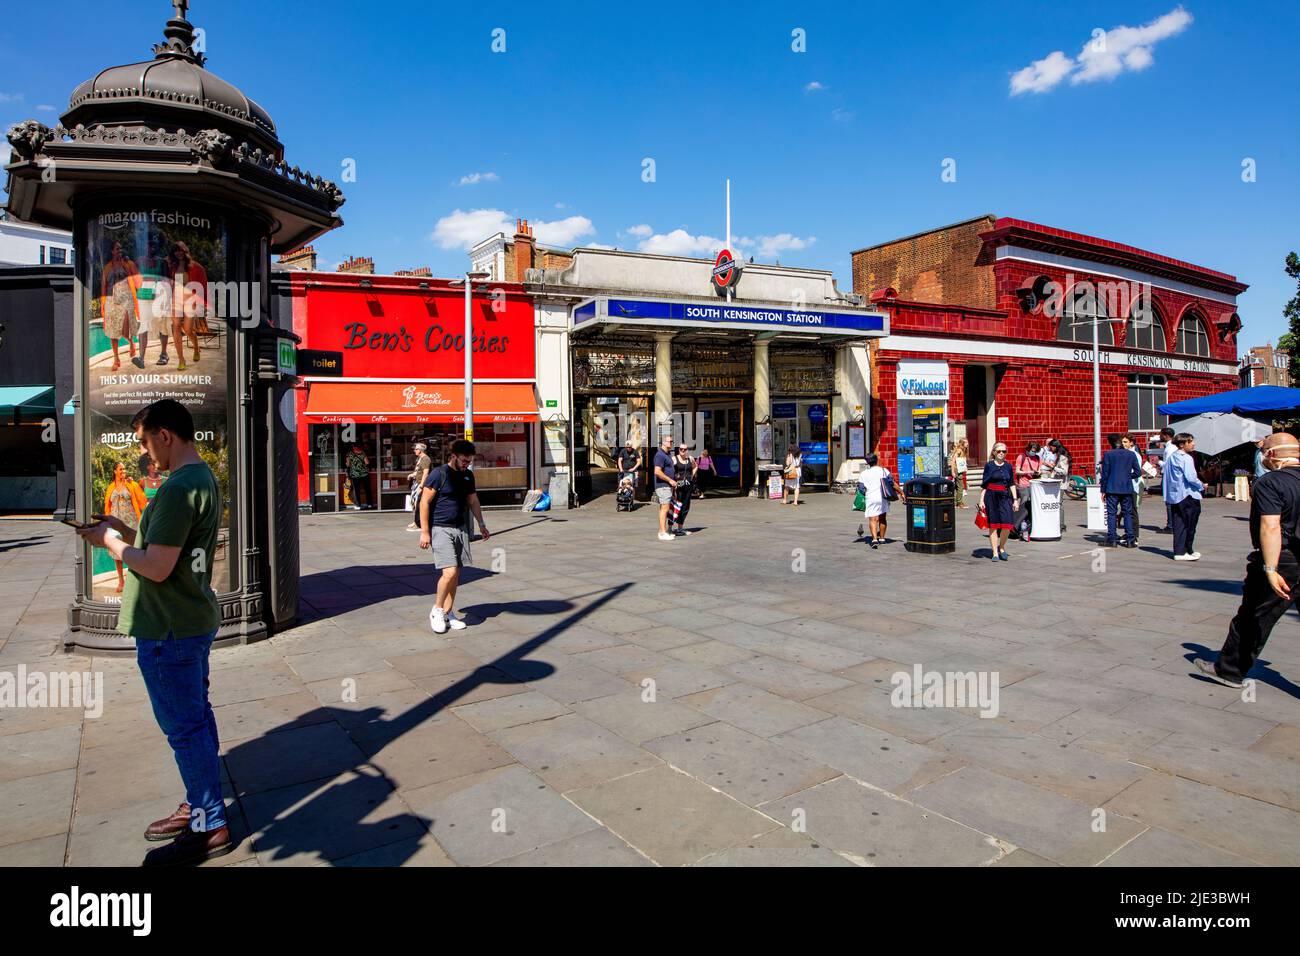 South Kensington Underground, Londres, Reino Unido; la gran plaza frente a la estación de metro en un soleado día de verano Foto de stock